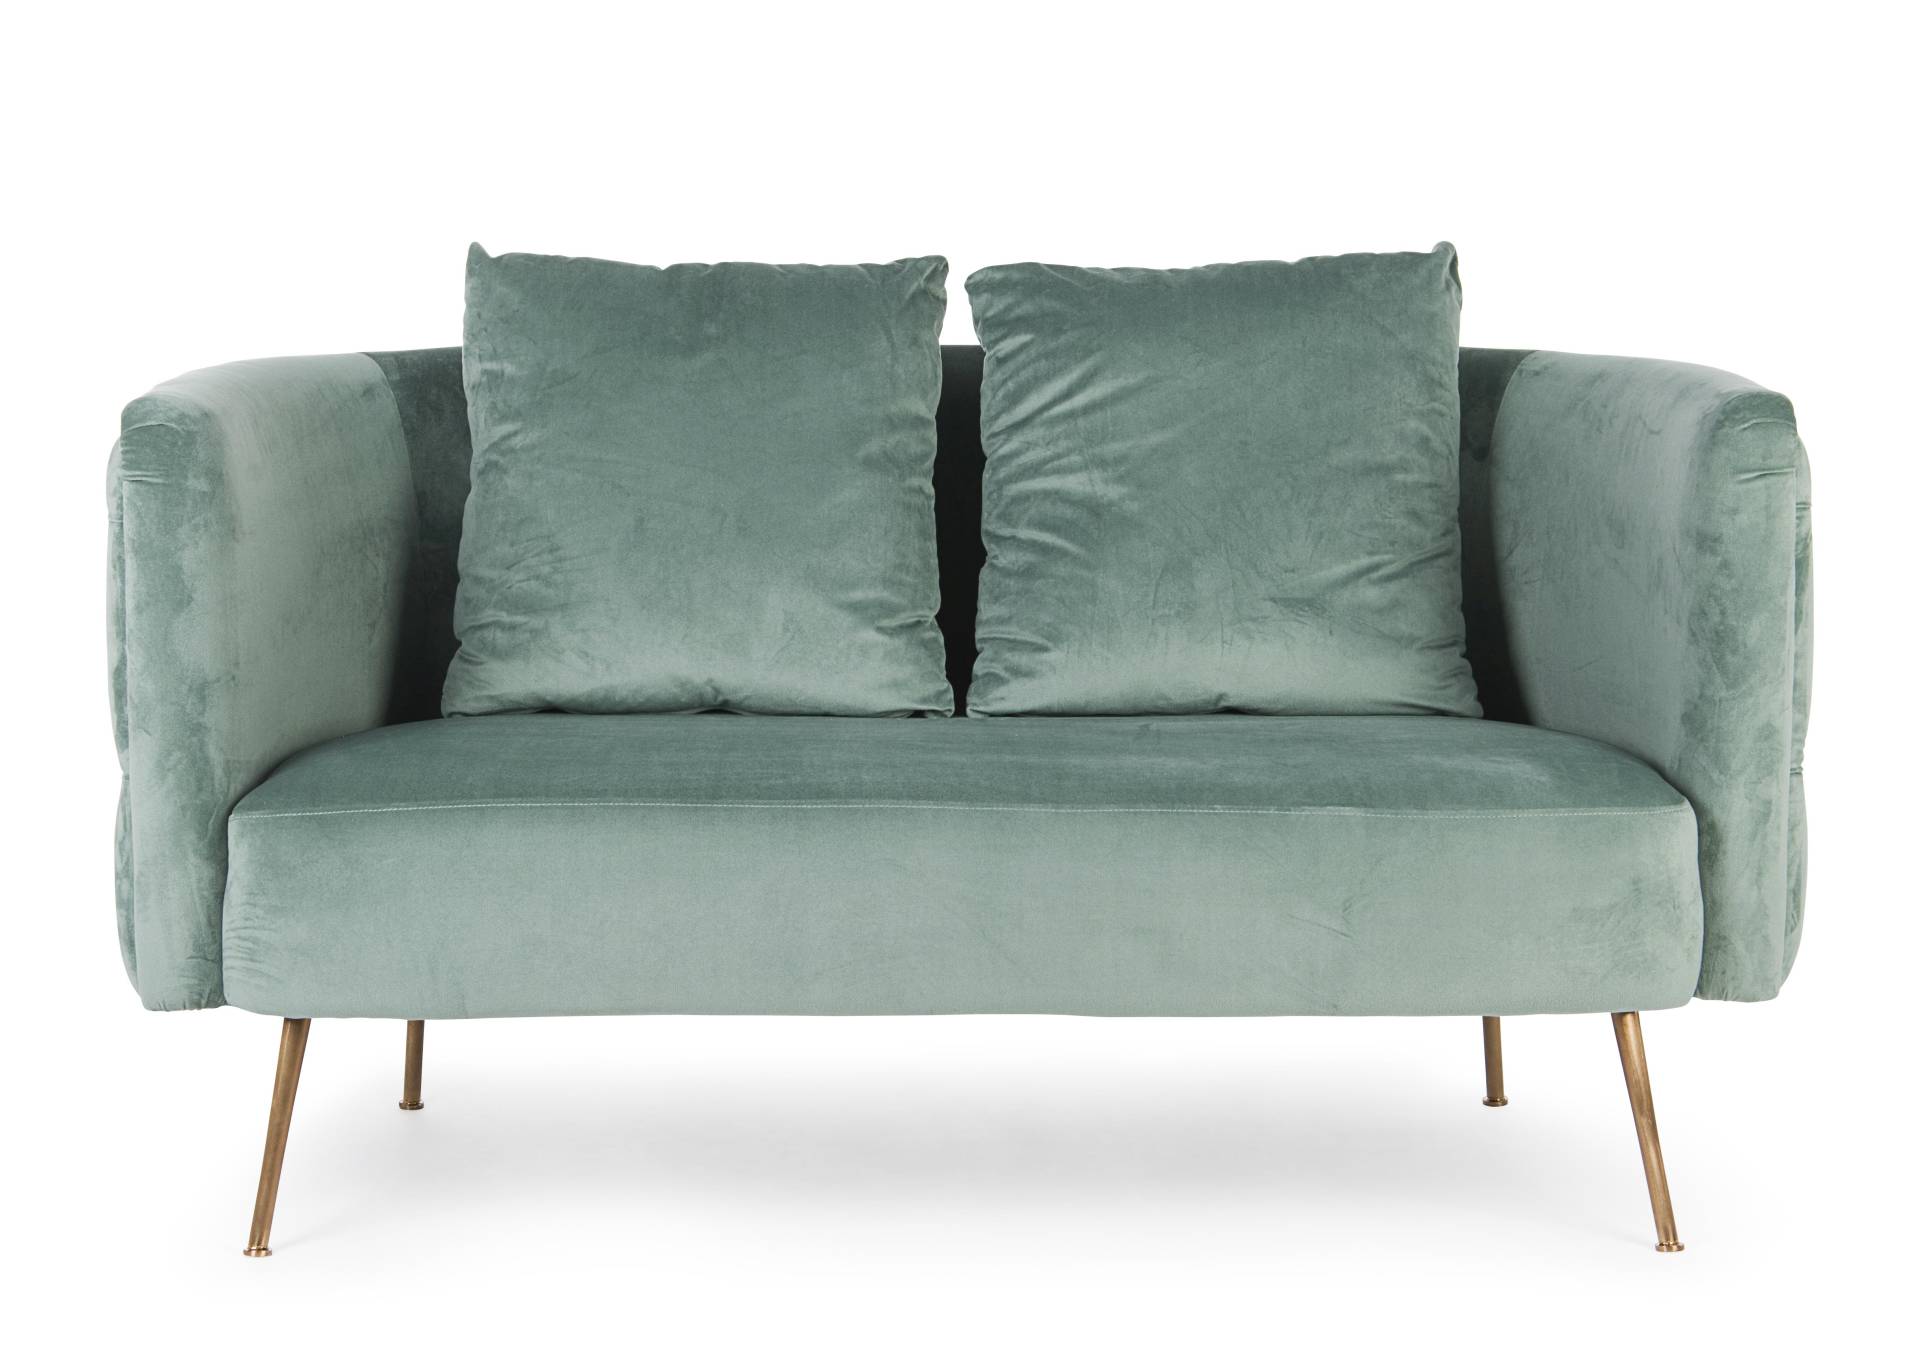 Das Sofa Tenbury überzeugt mit seinem modernen Design. Gefertigt wurde es aus Stoff in Samt-Optik, welcher einen türkis Farbton besitzt. Das Gestell ist aus Metall und hat eine goldene Farbe. Das Sofa ist in der Ausführung als 2-Sitzer. Die Breite beträgt